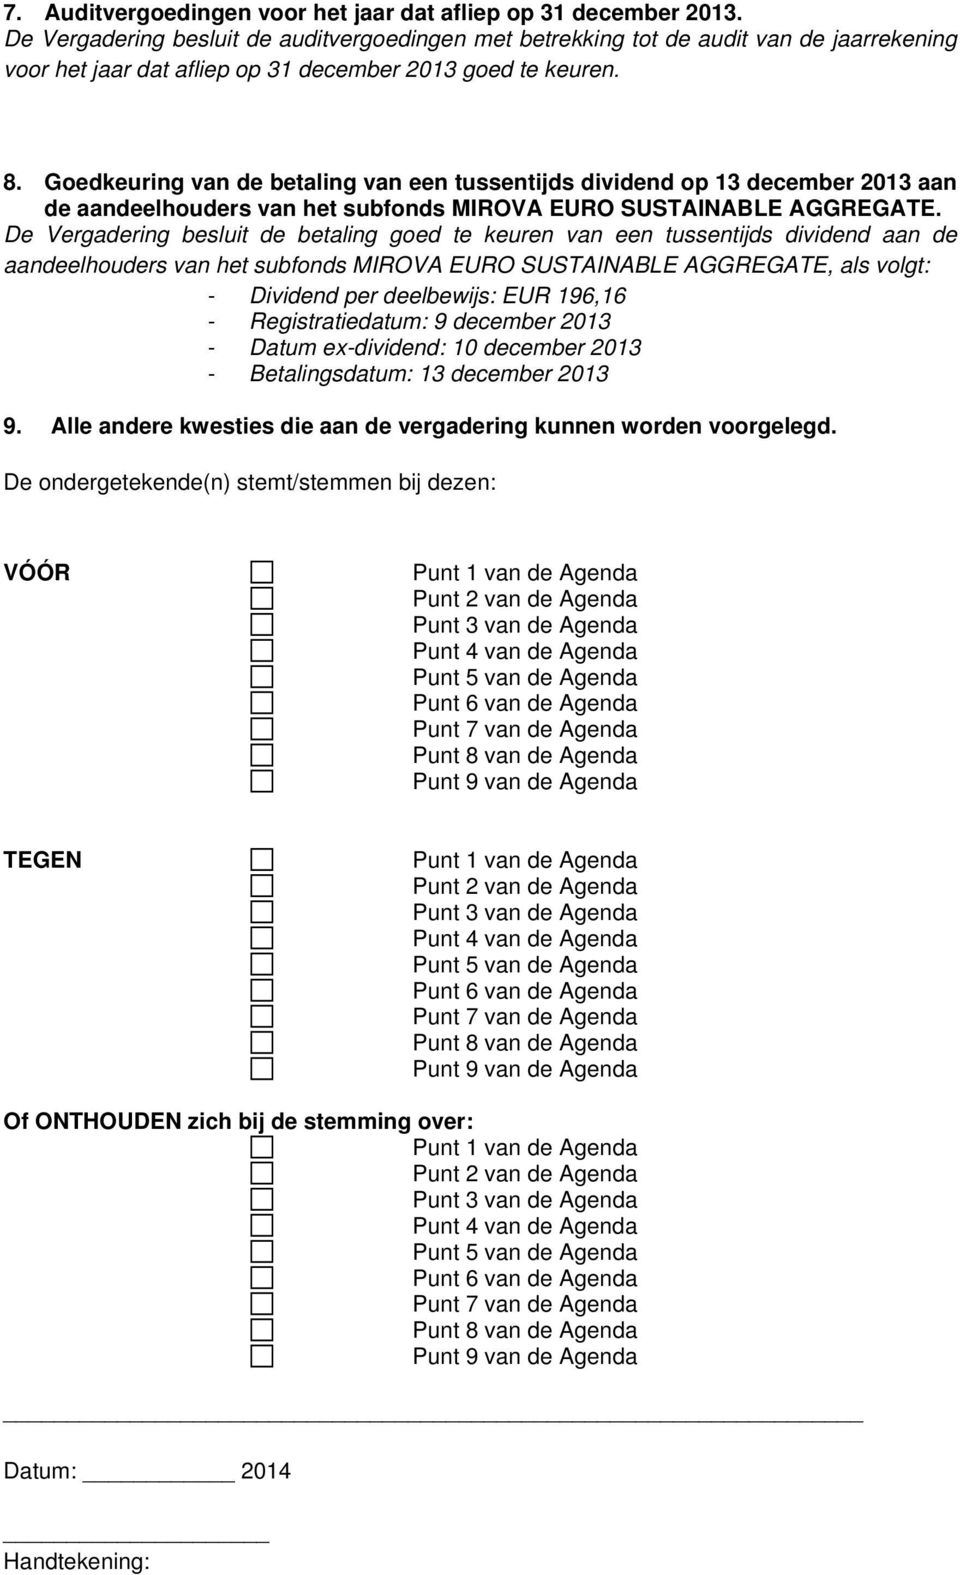 Goedkeuring van de betaling van een tussentijds dividend op 13 december 2013 aan de aandeelhouders van het subfonds MIROVA EURO SUSTAINABLE AGGREGATE.